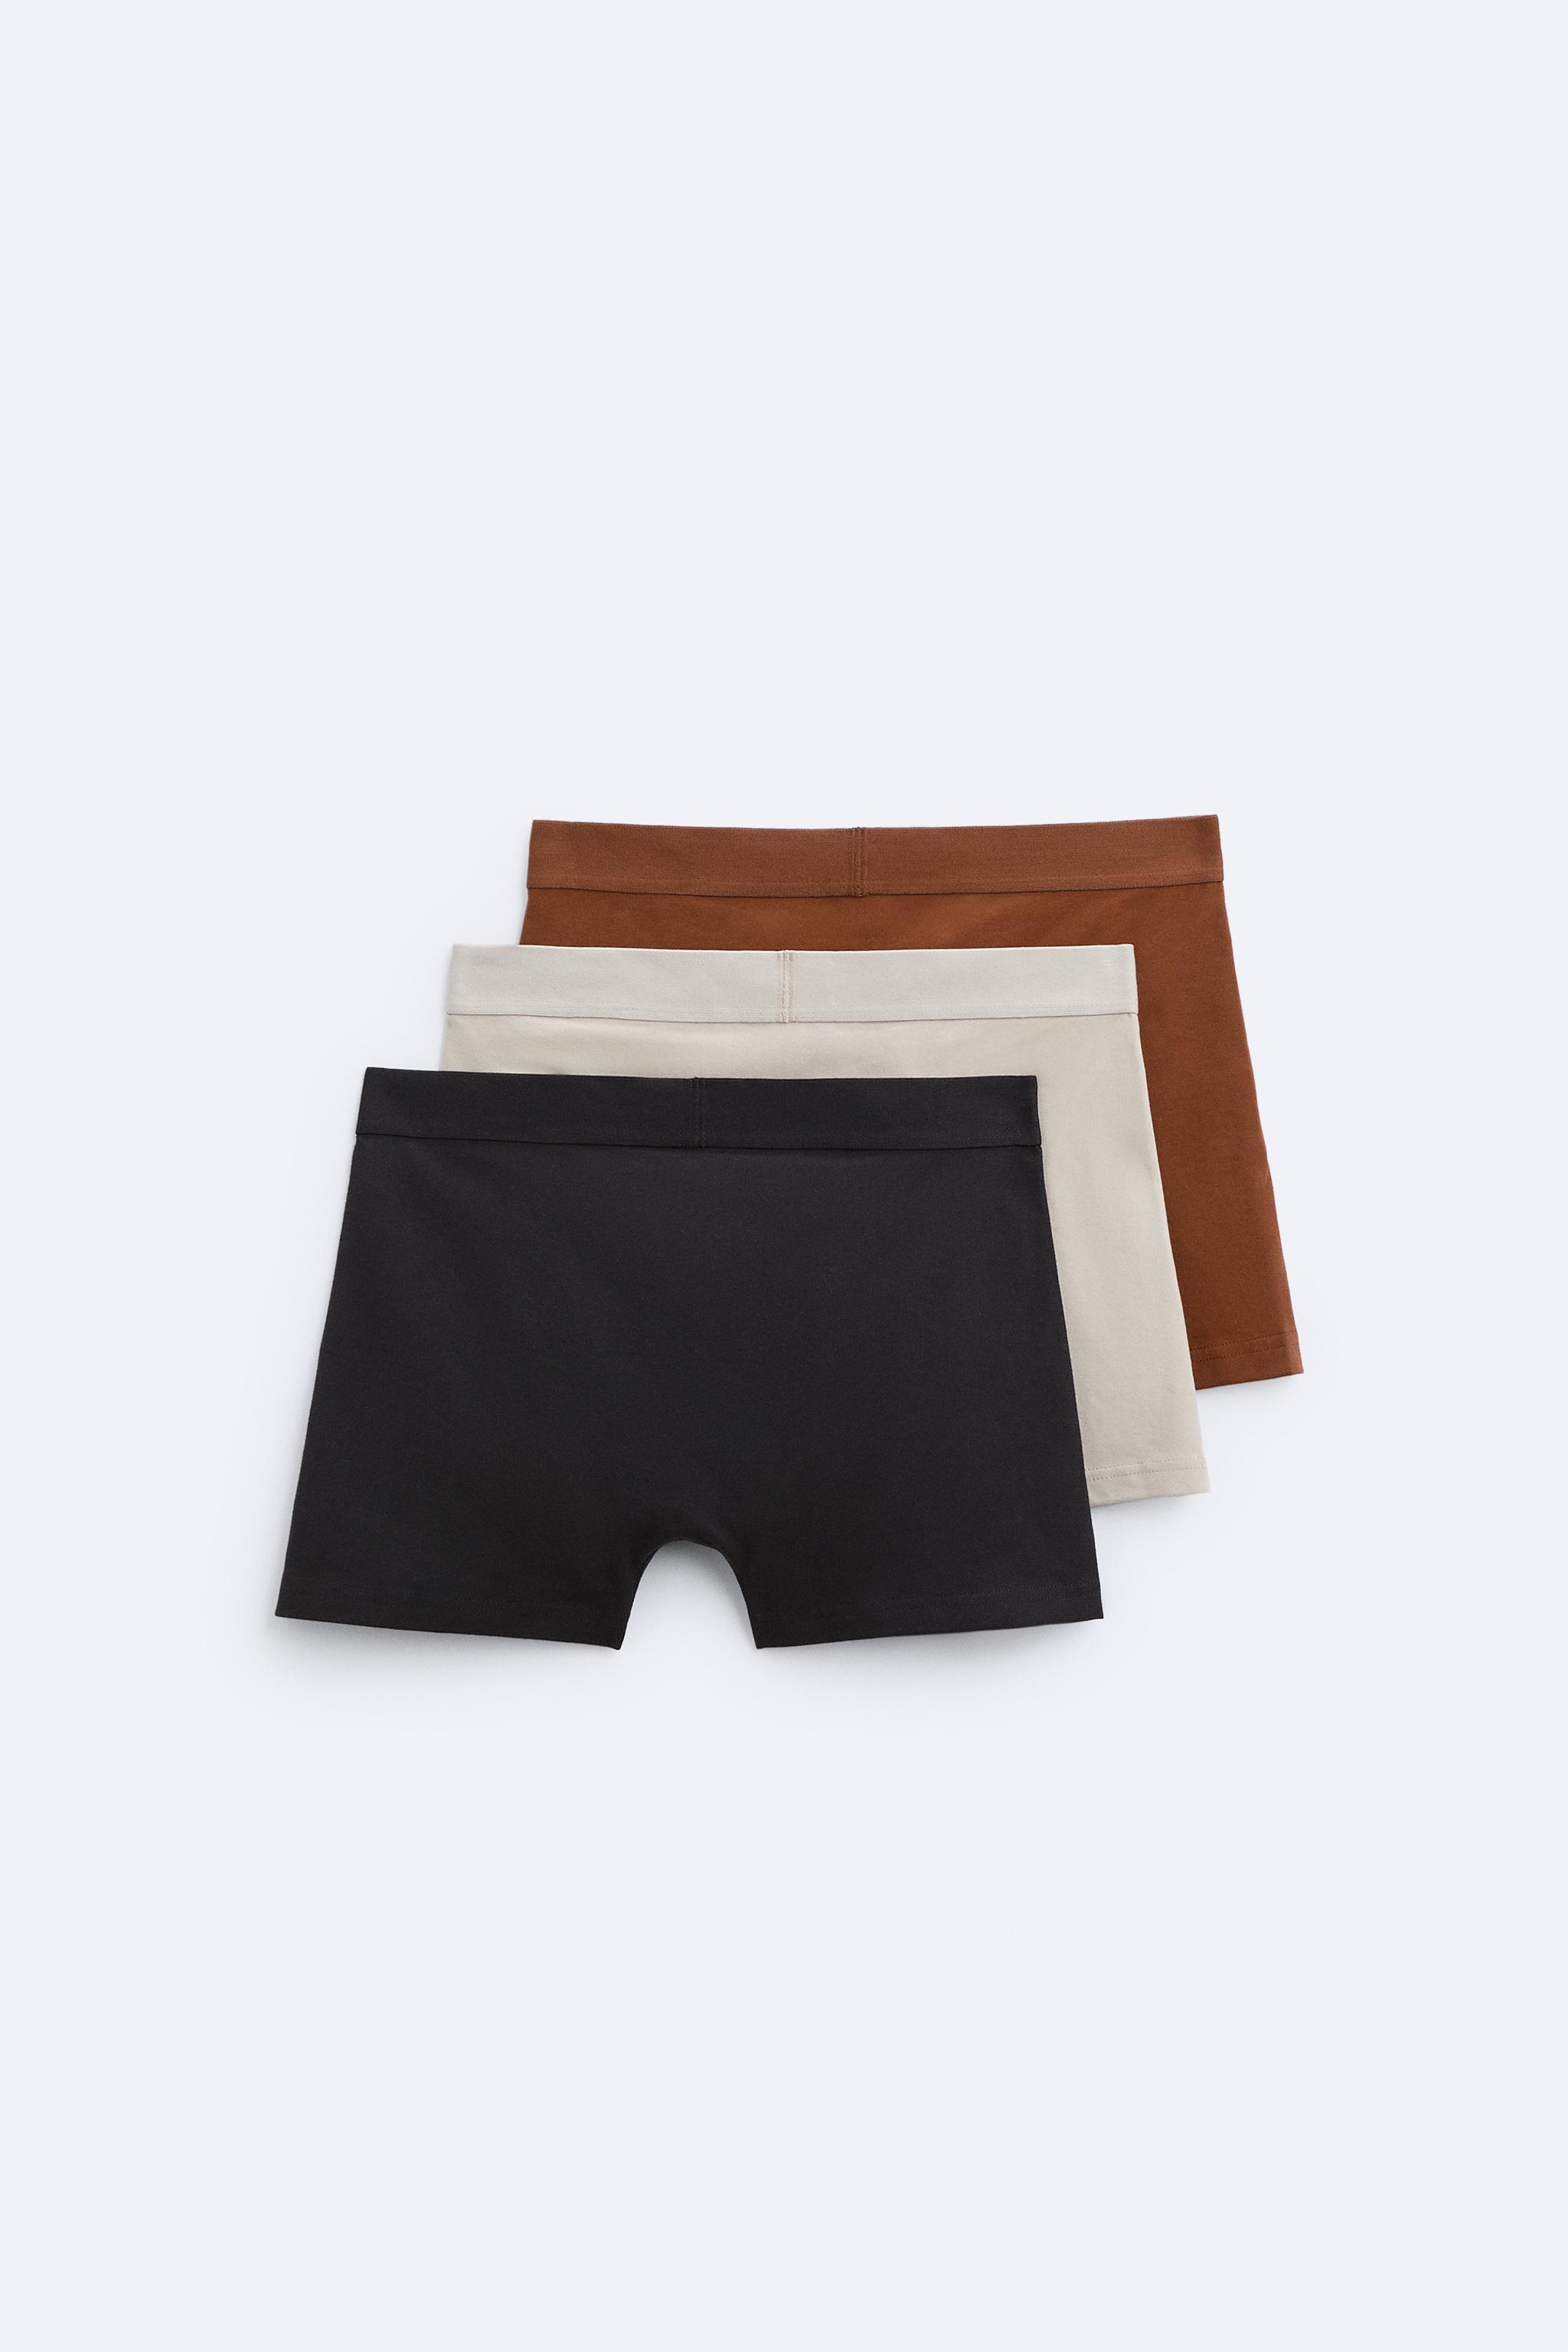  ESTEEZ Medium Black Underwear Pack For Women Cotton